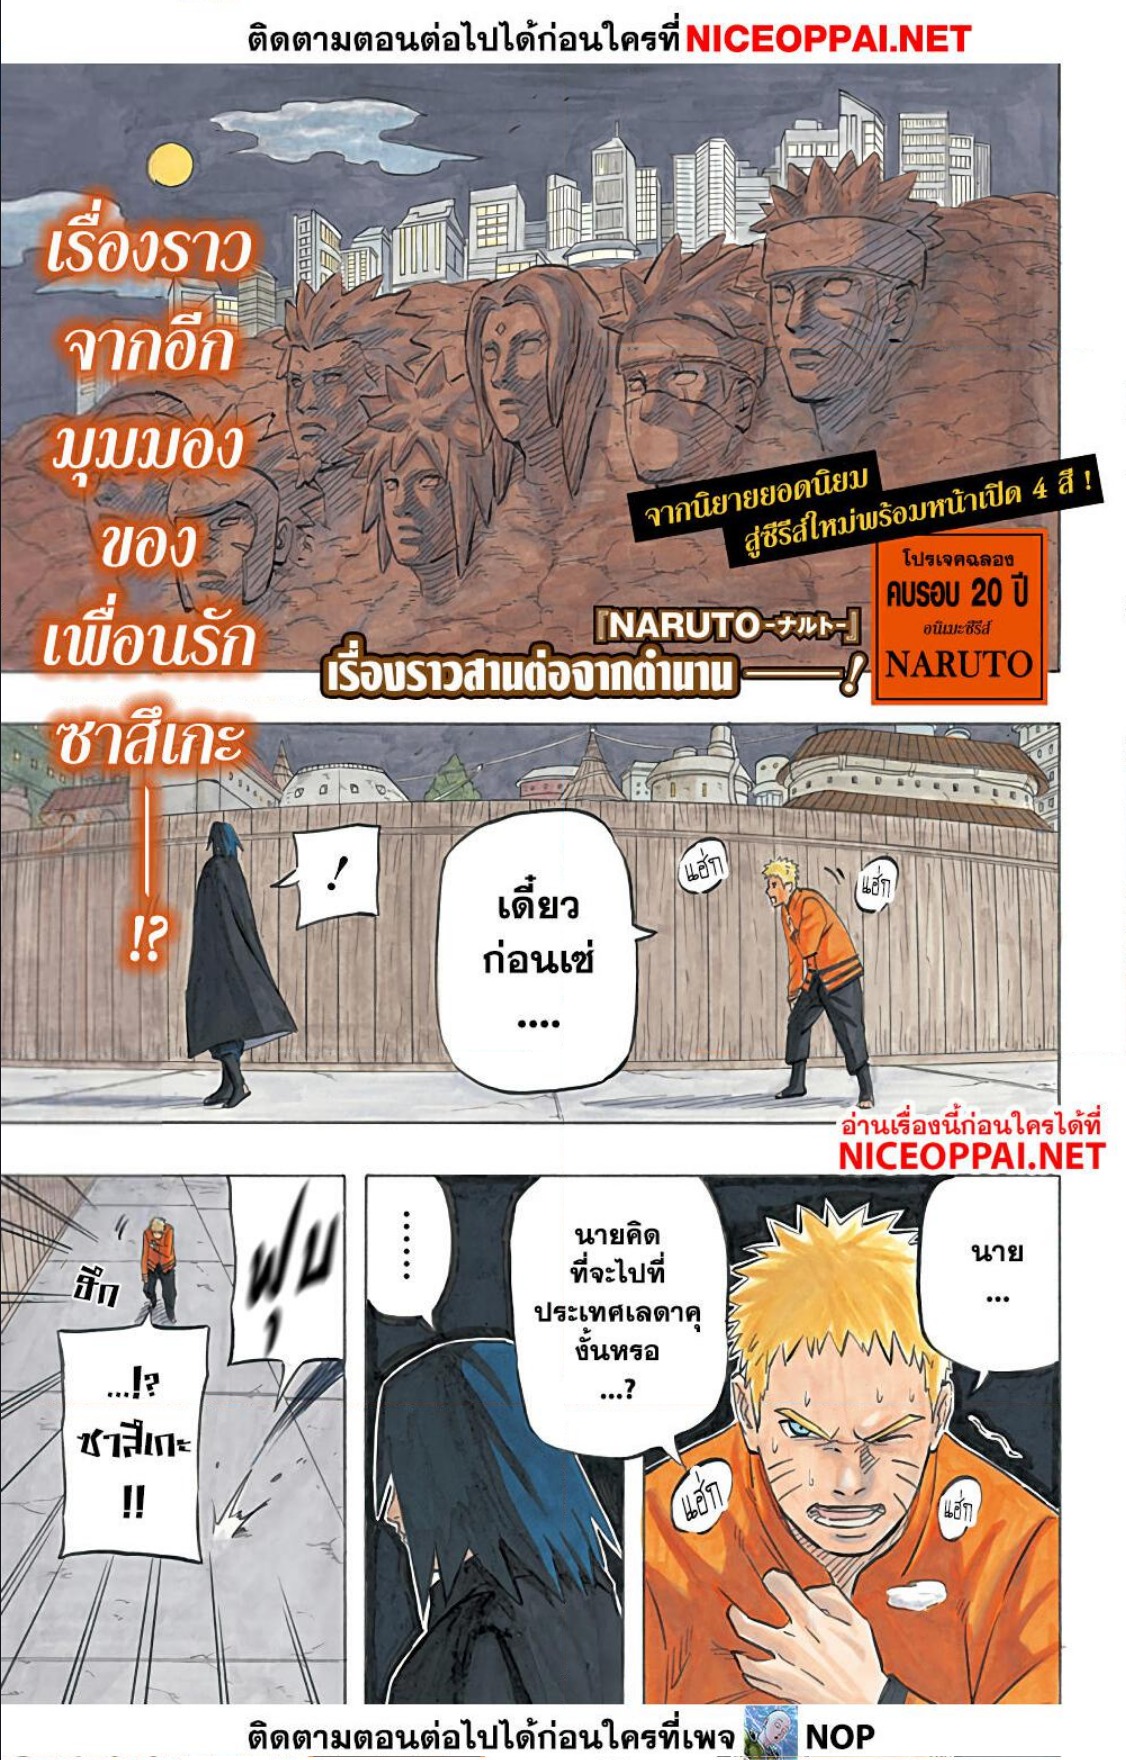 Naruto Sasuke’s Story The Uchiha and the Heavenly Stardust ตอนที่ 1 (1)